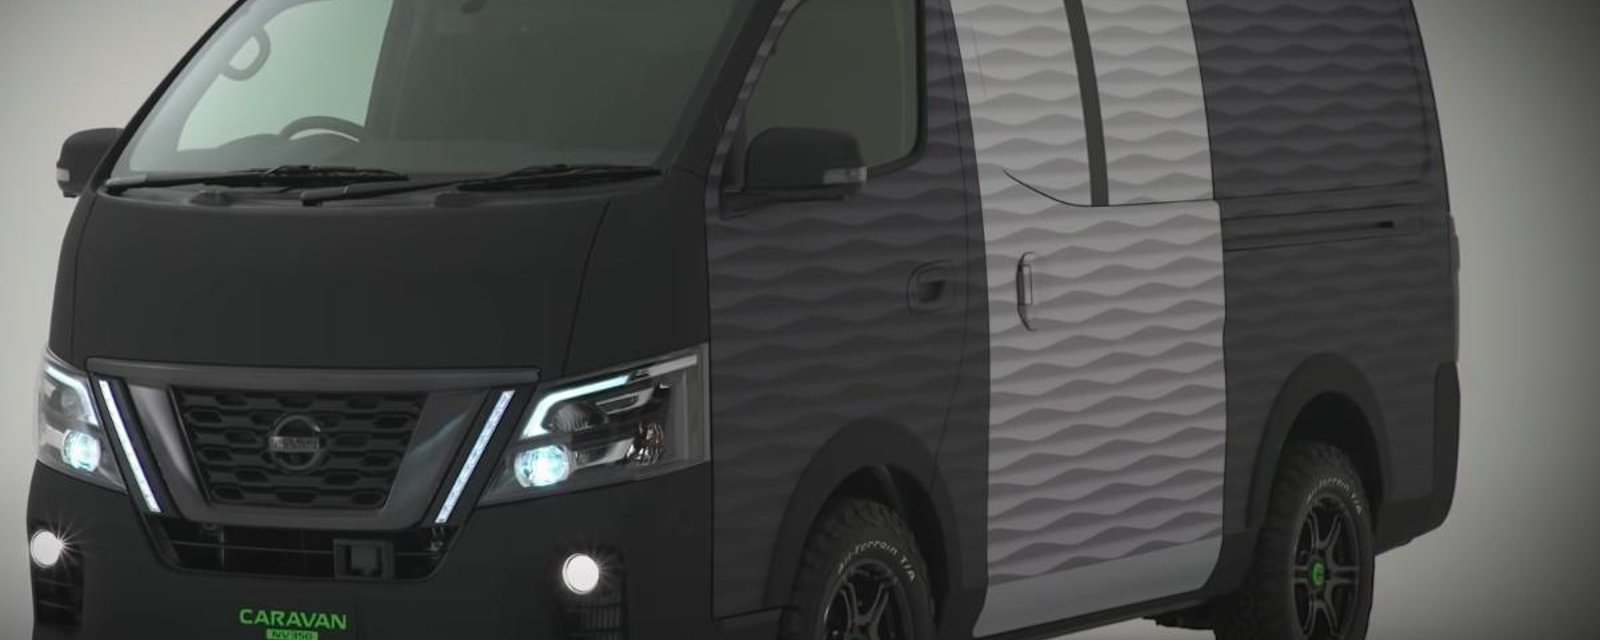 Télétravail en mouvement: Nissan lance un van adapté aux déplacements